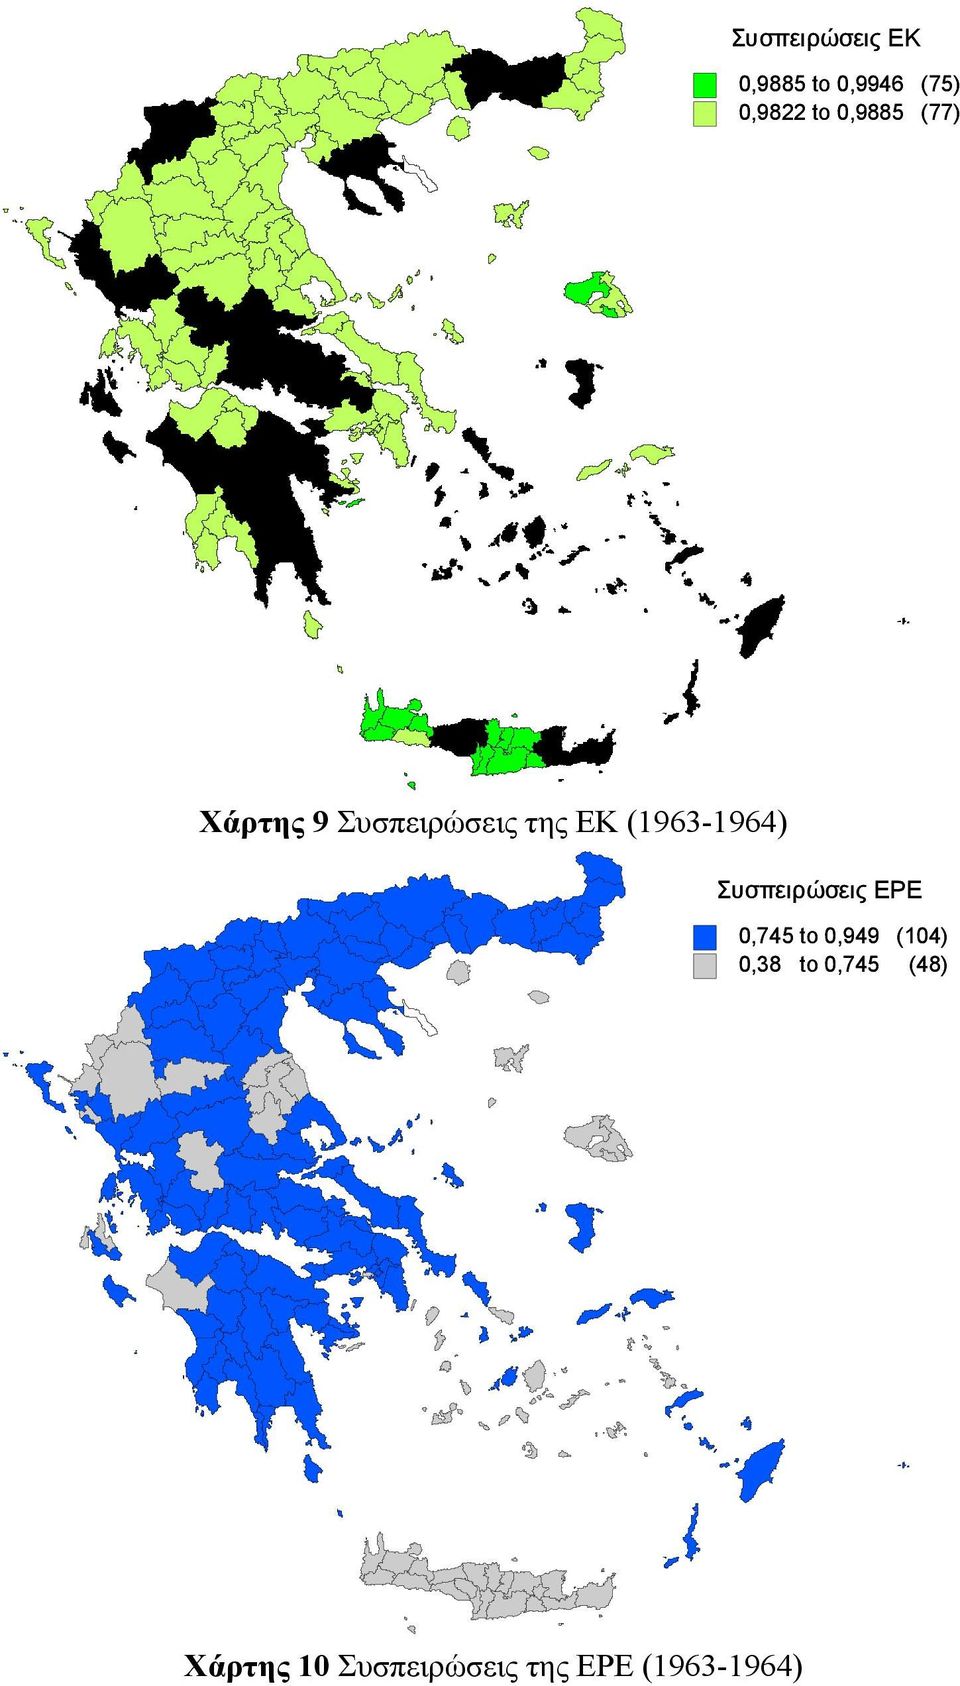 (1963-1964) Συσπειρώσεις ΕΡΕ 0,745 to 0,949 (104)